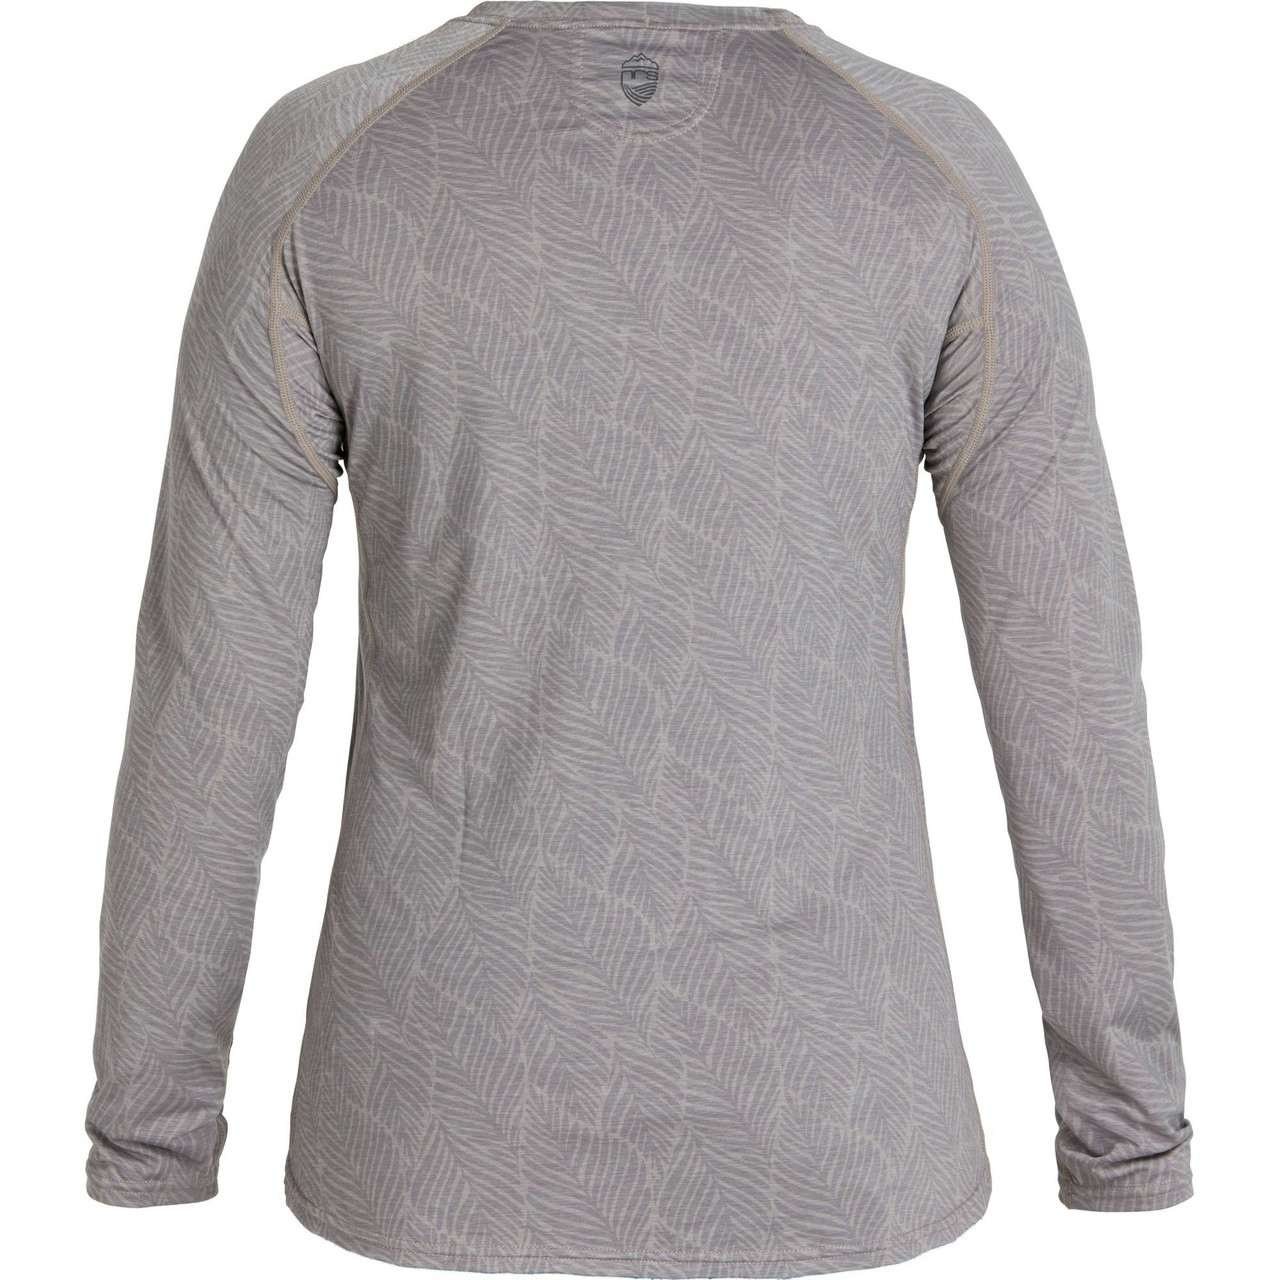 H2Core Silkweight Long Sleeve Shirt Sharkskin